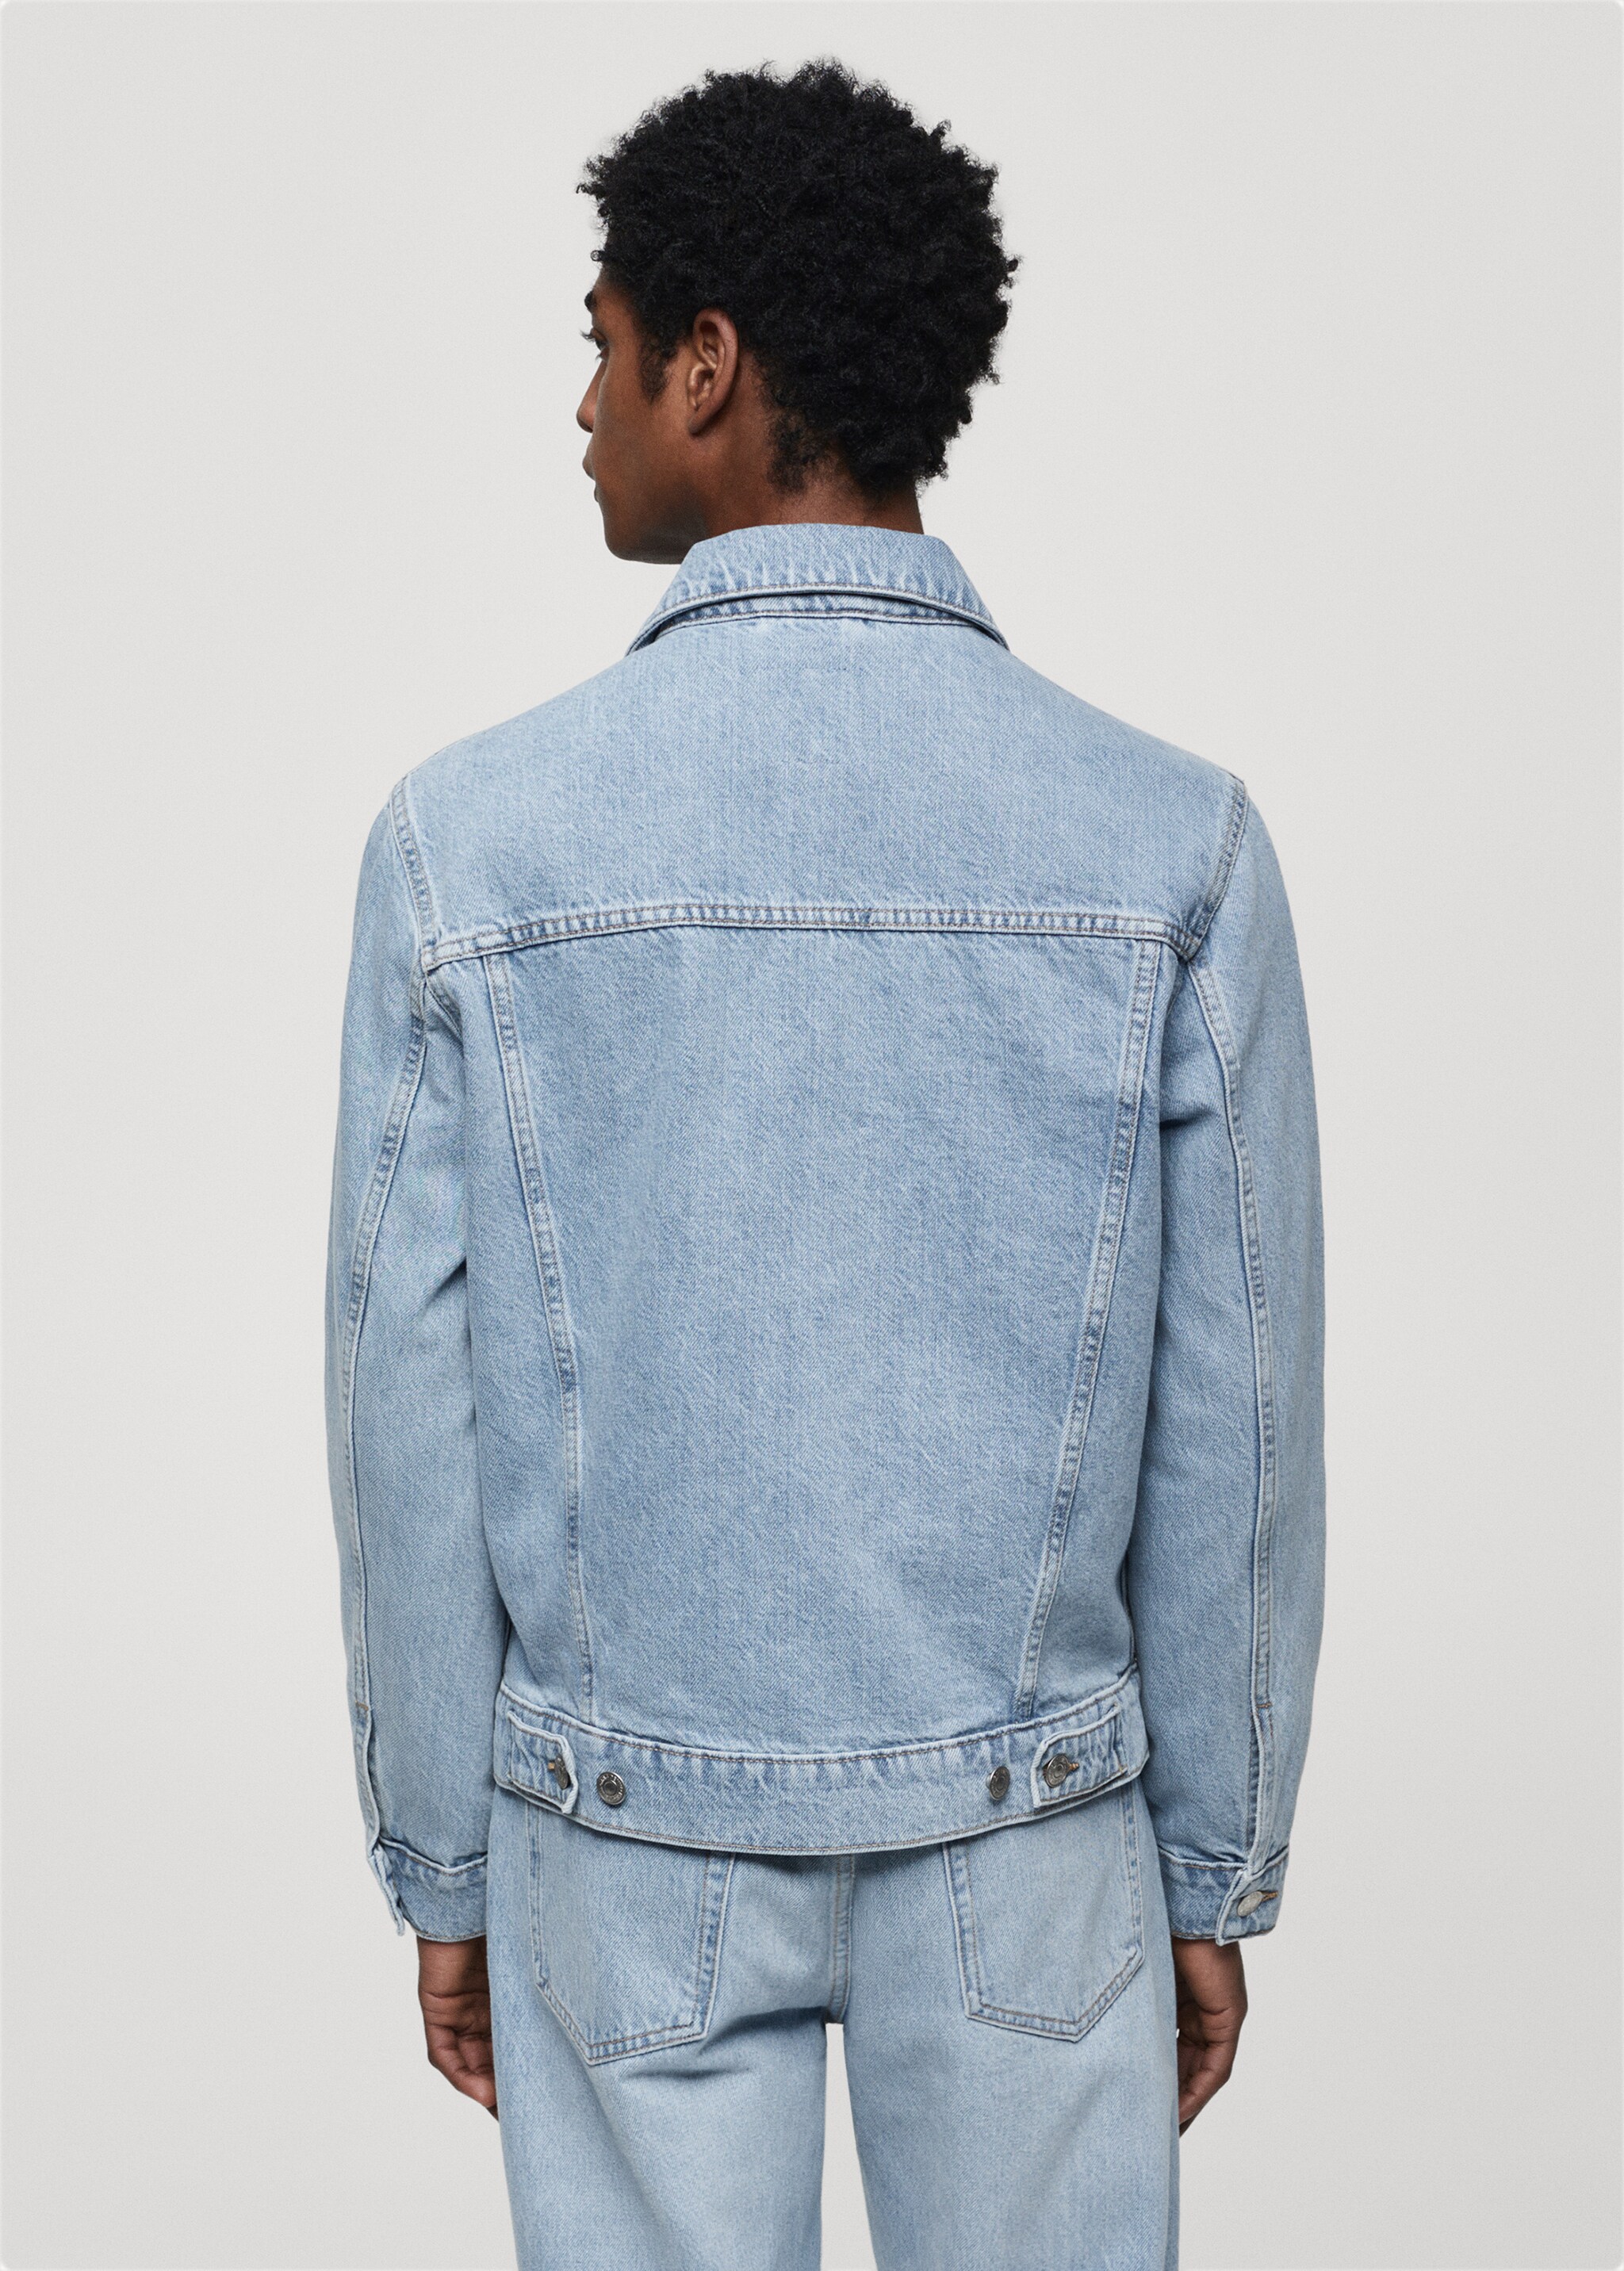 Jeansjacke mit Taschen - Rückseite des Artikels